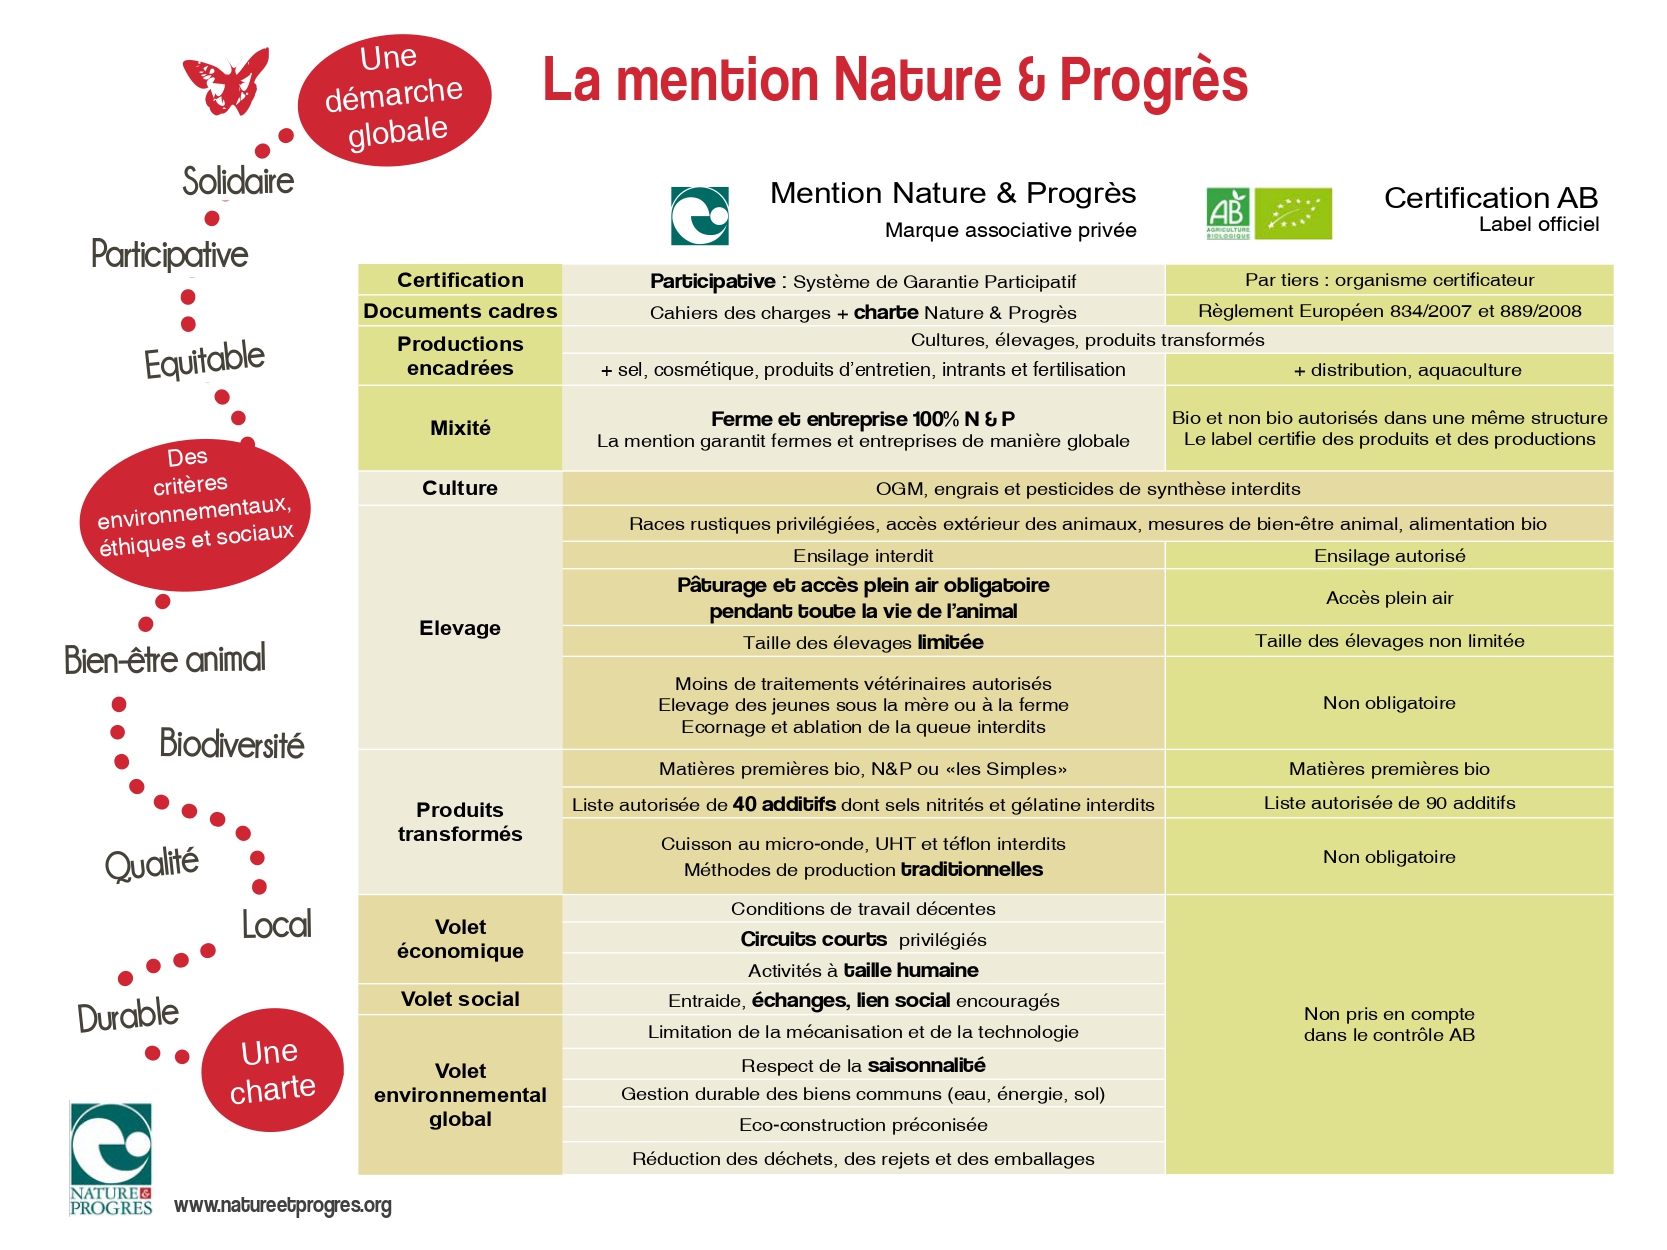 tableau de comparaison entre les labels AB et nature et progrès